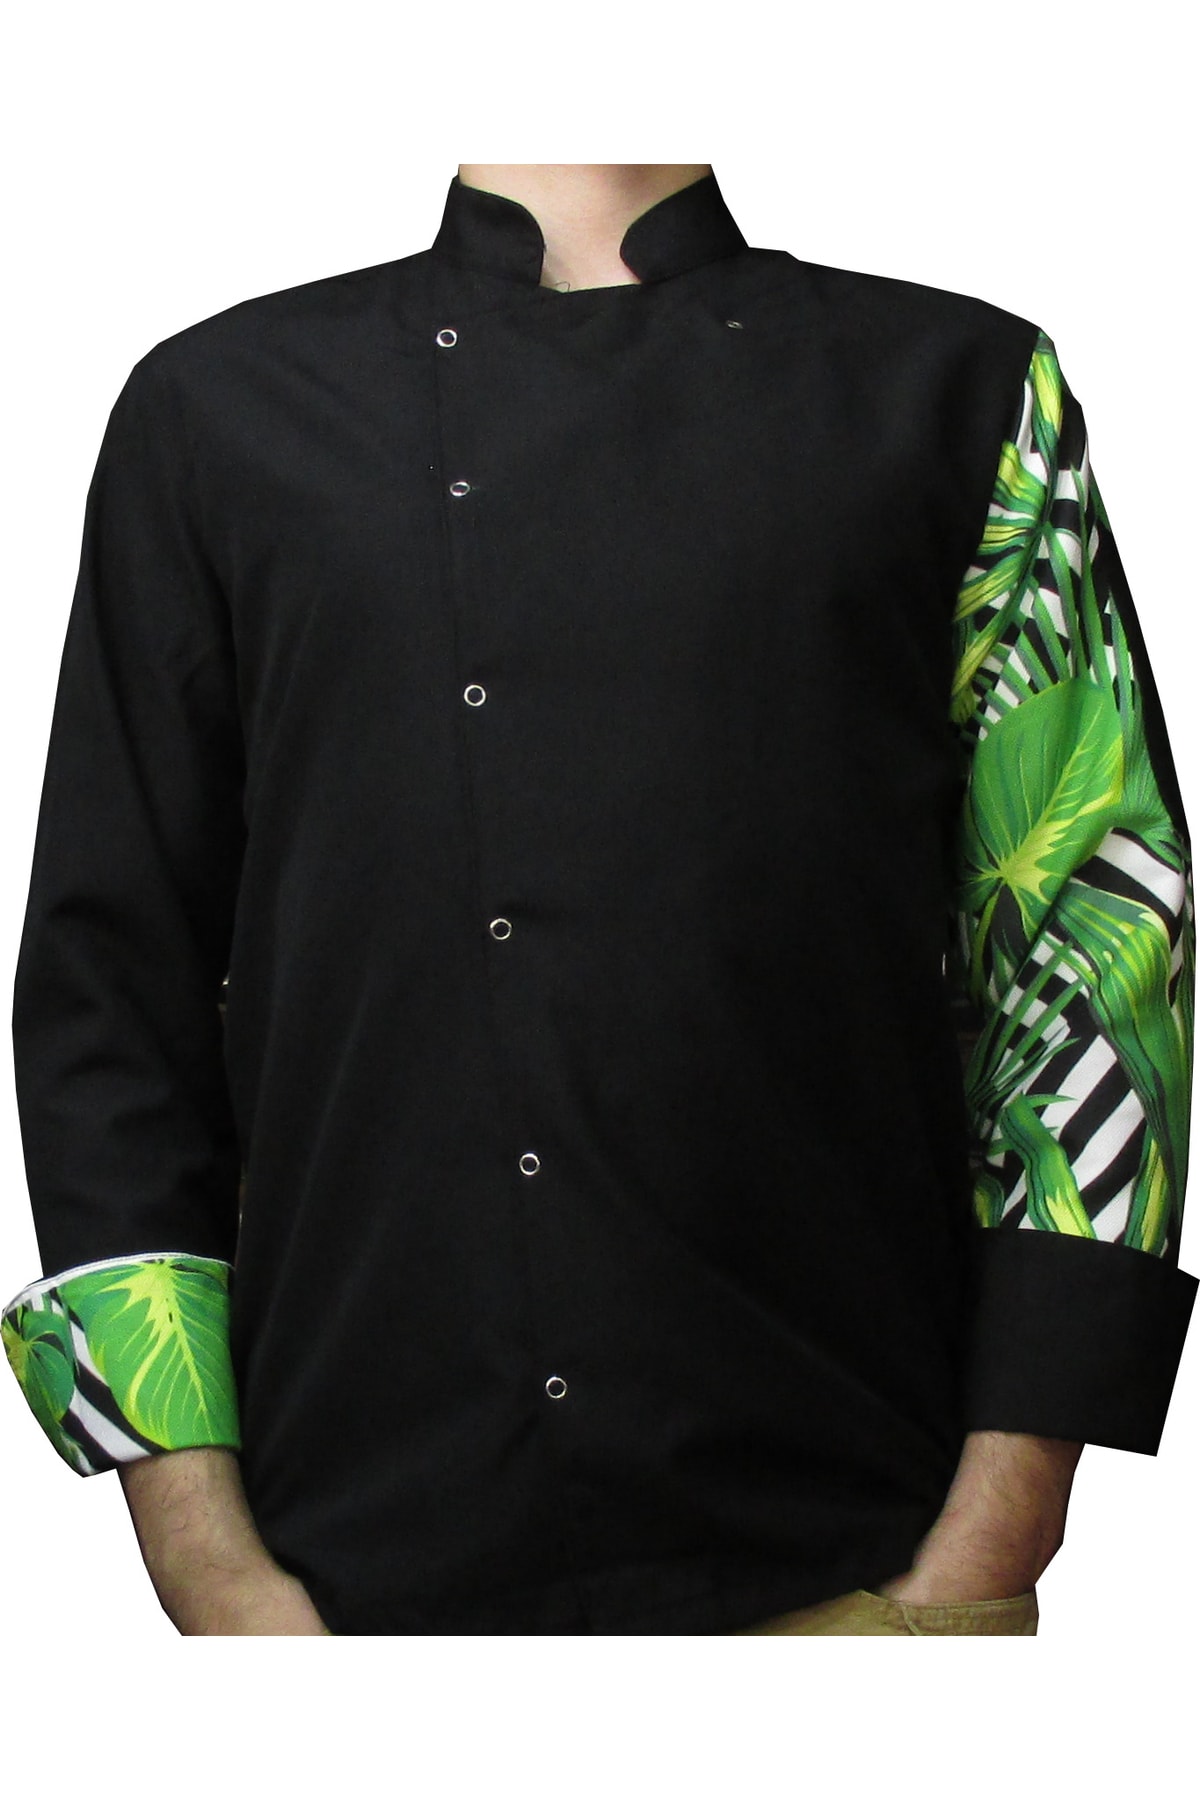 Ant Rotagrup Üniforma ve İş Elbiseleri Aşçı Ceketi Desenli Unisex Çıtçıtlı Siyah Uzun Kollu Chef Aşçı Mutfak Ceket Yeşil Yaprak